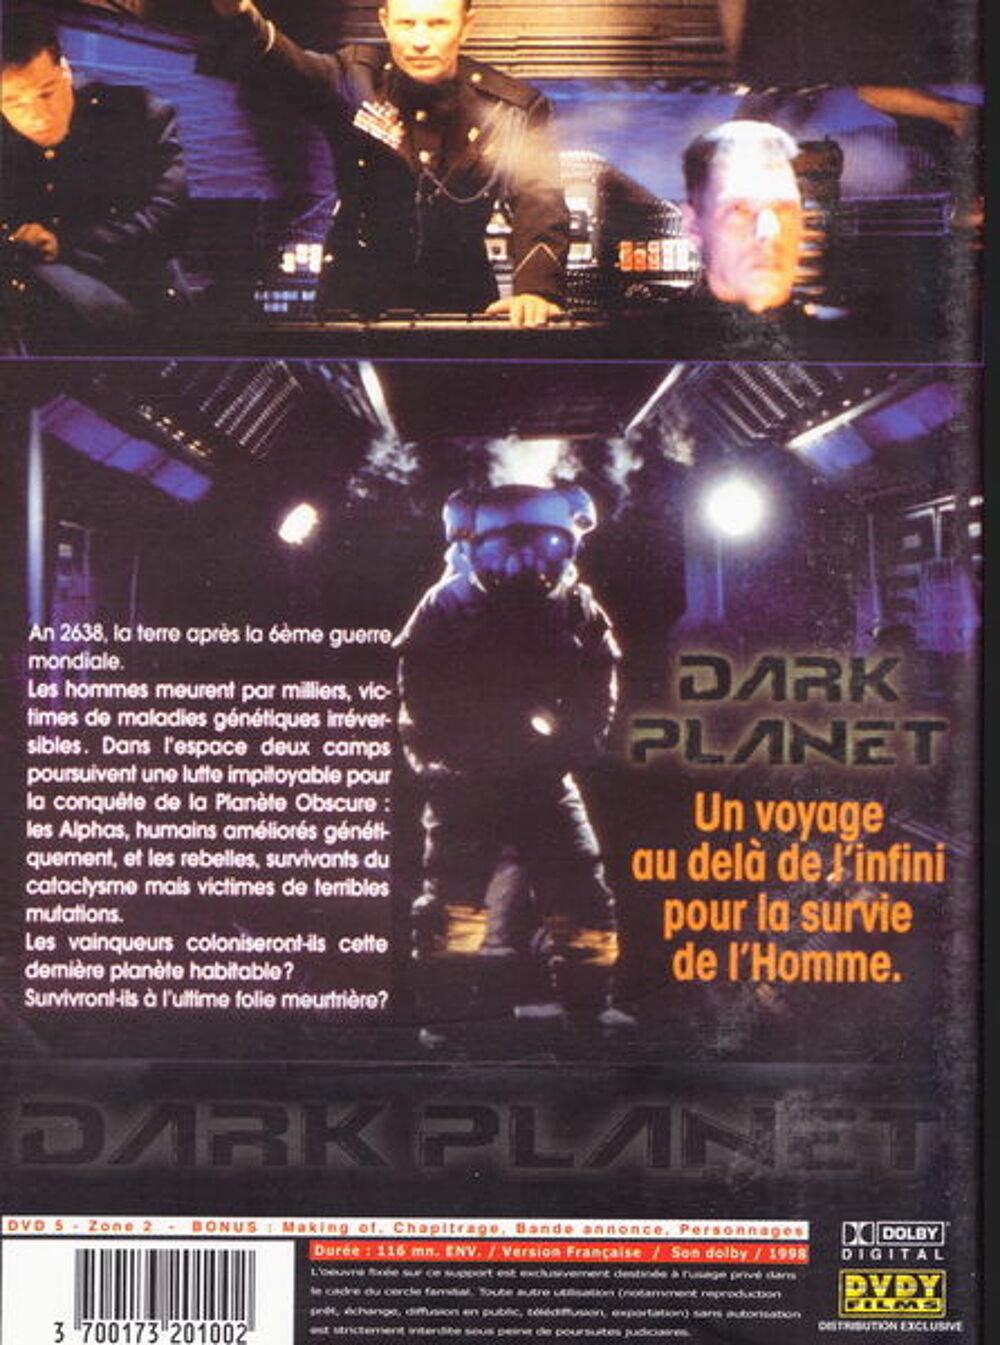 DVD Dark planet
DVD et blu-ray